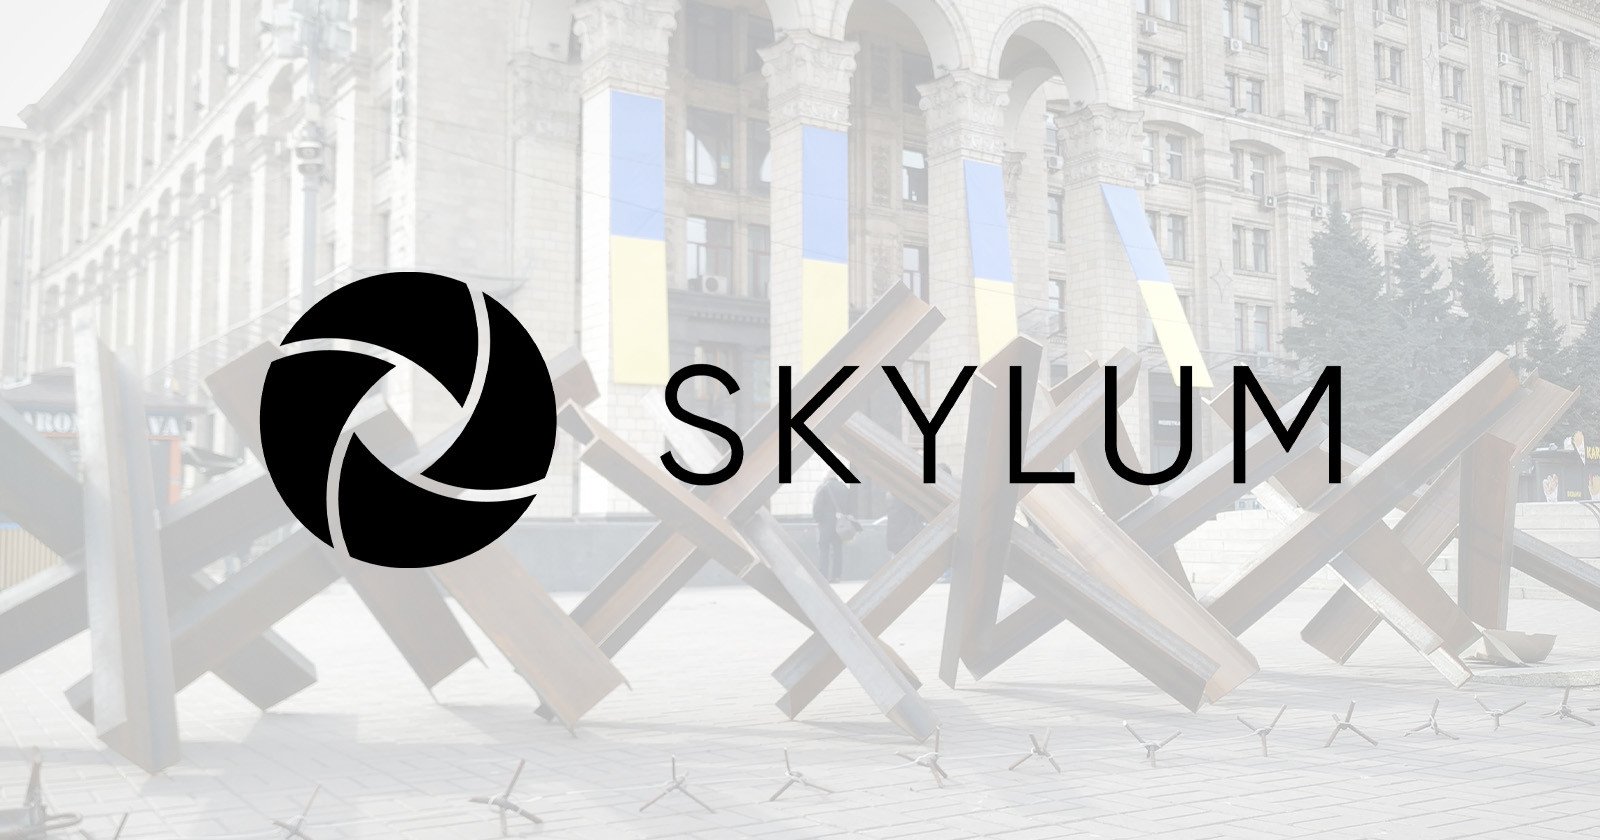 How Skylum is Still Developing Software in War-Torn Ukraine